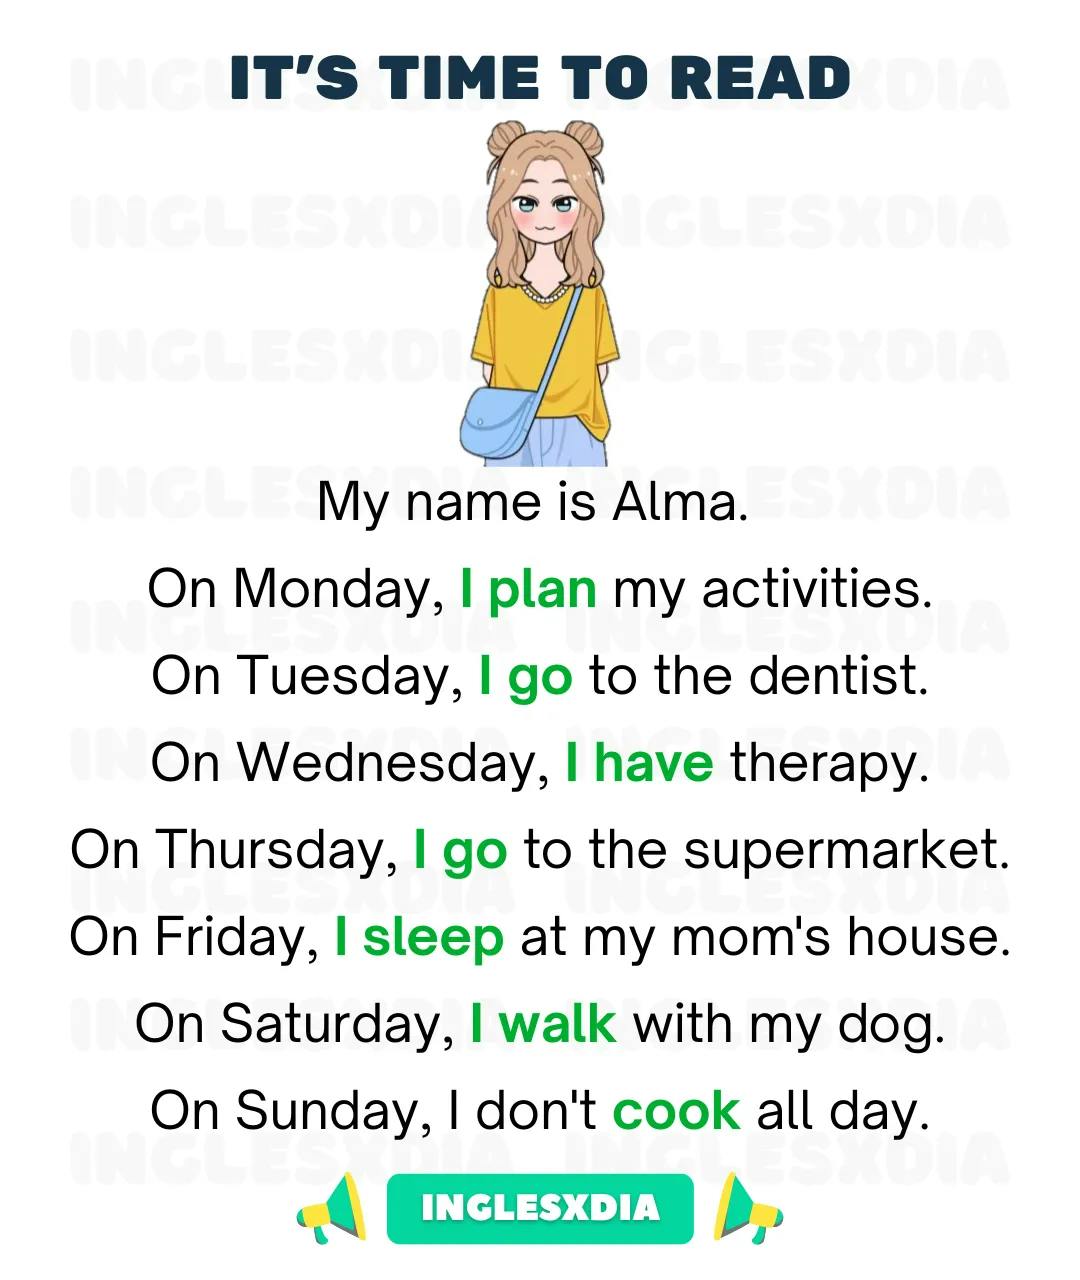 Alma's routine